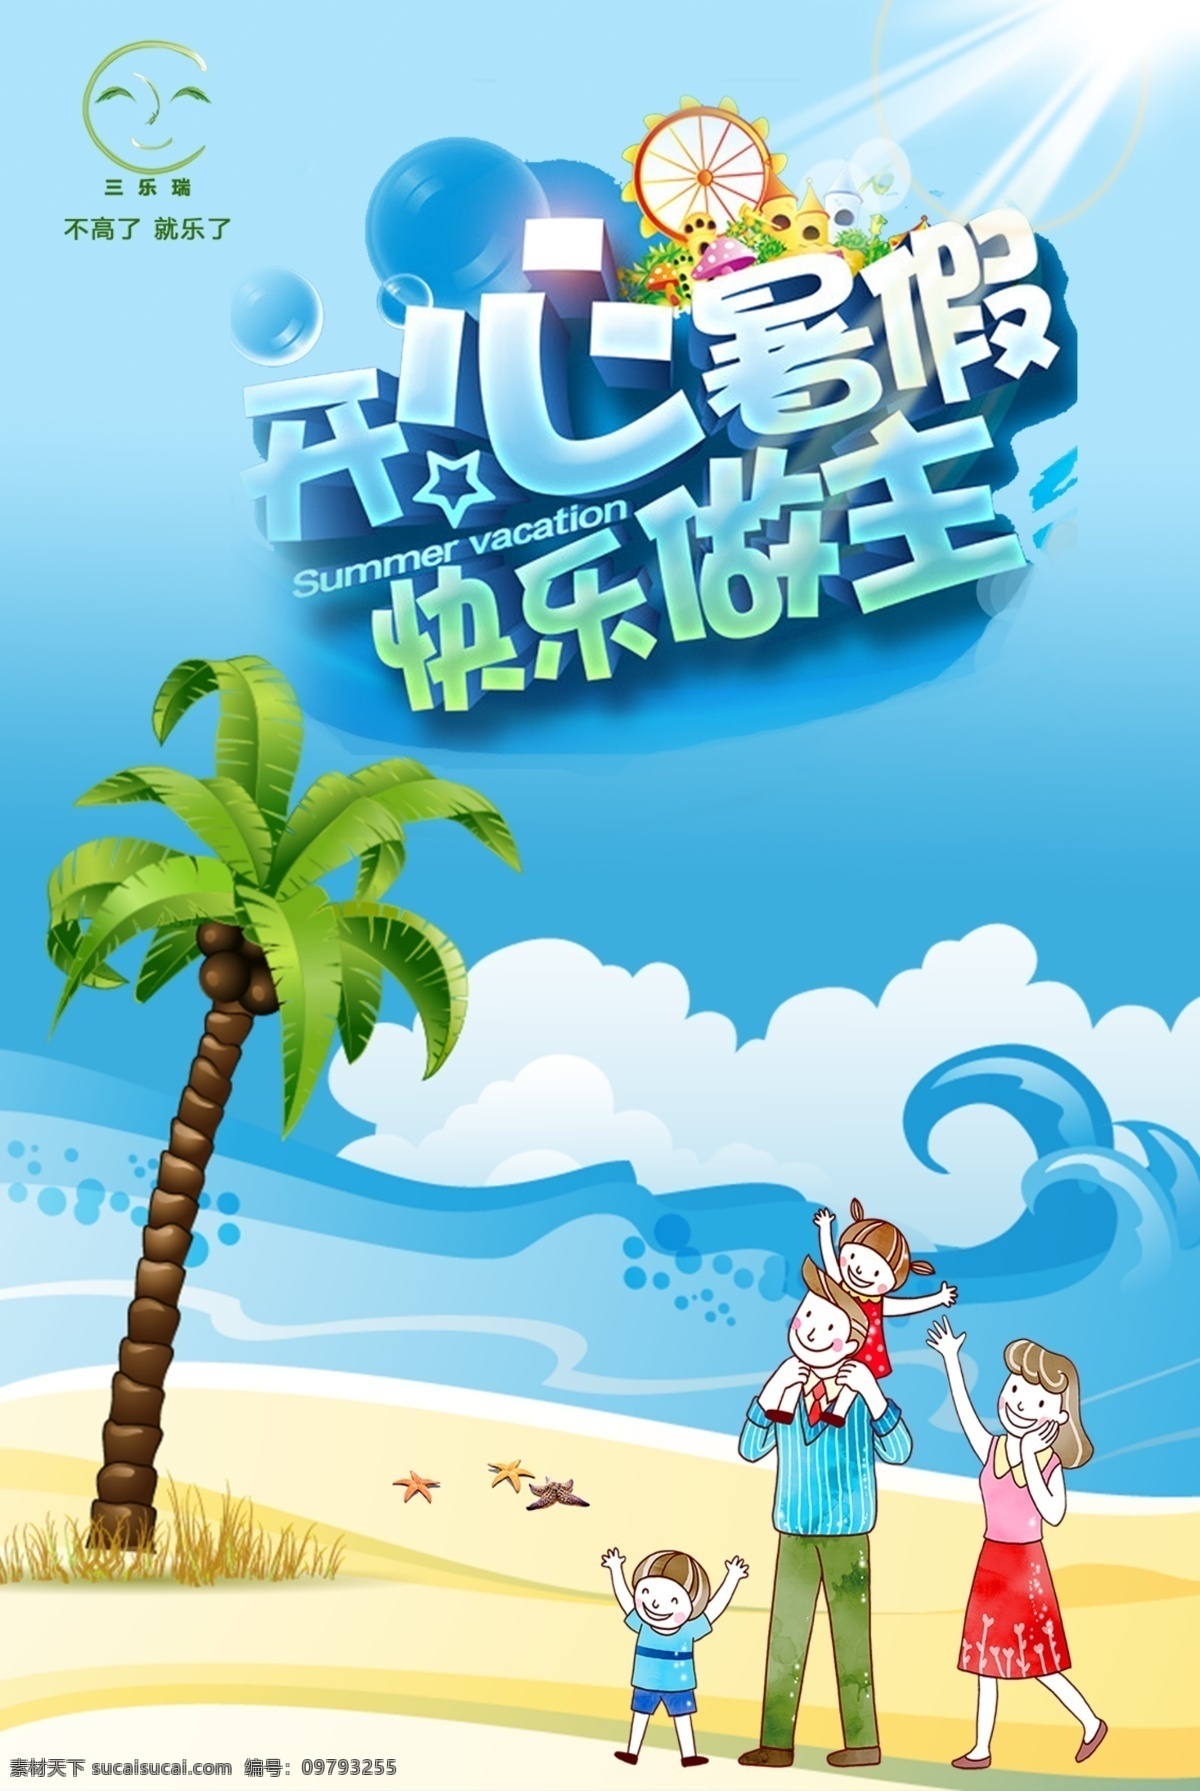 快乐暑假海报 开心暑假 暑假海报 海报 暑假 开心 海边 游玩 企业文化